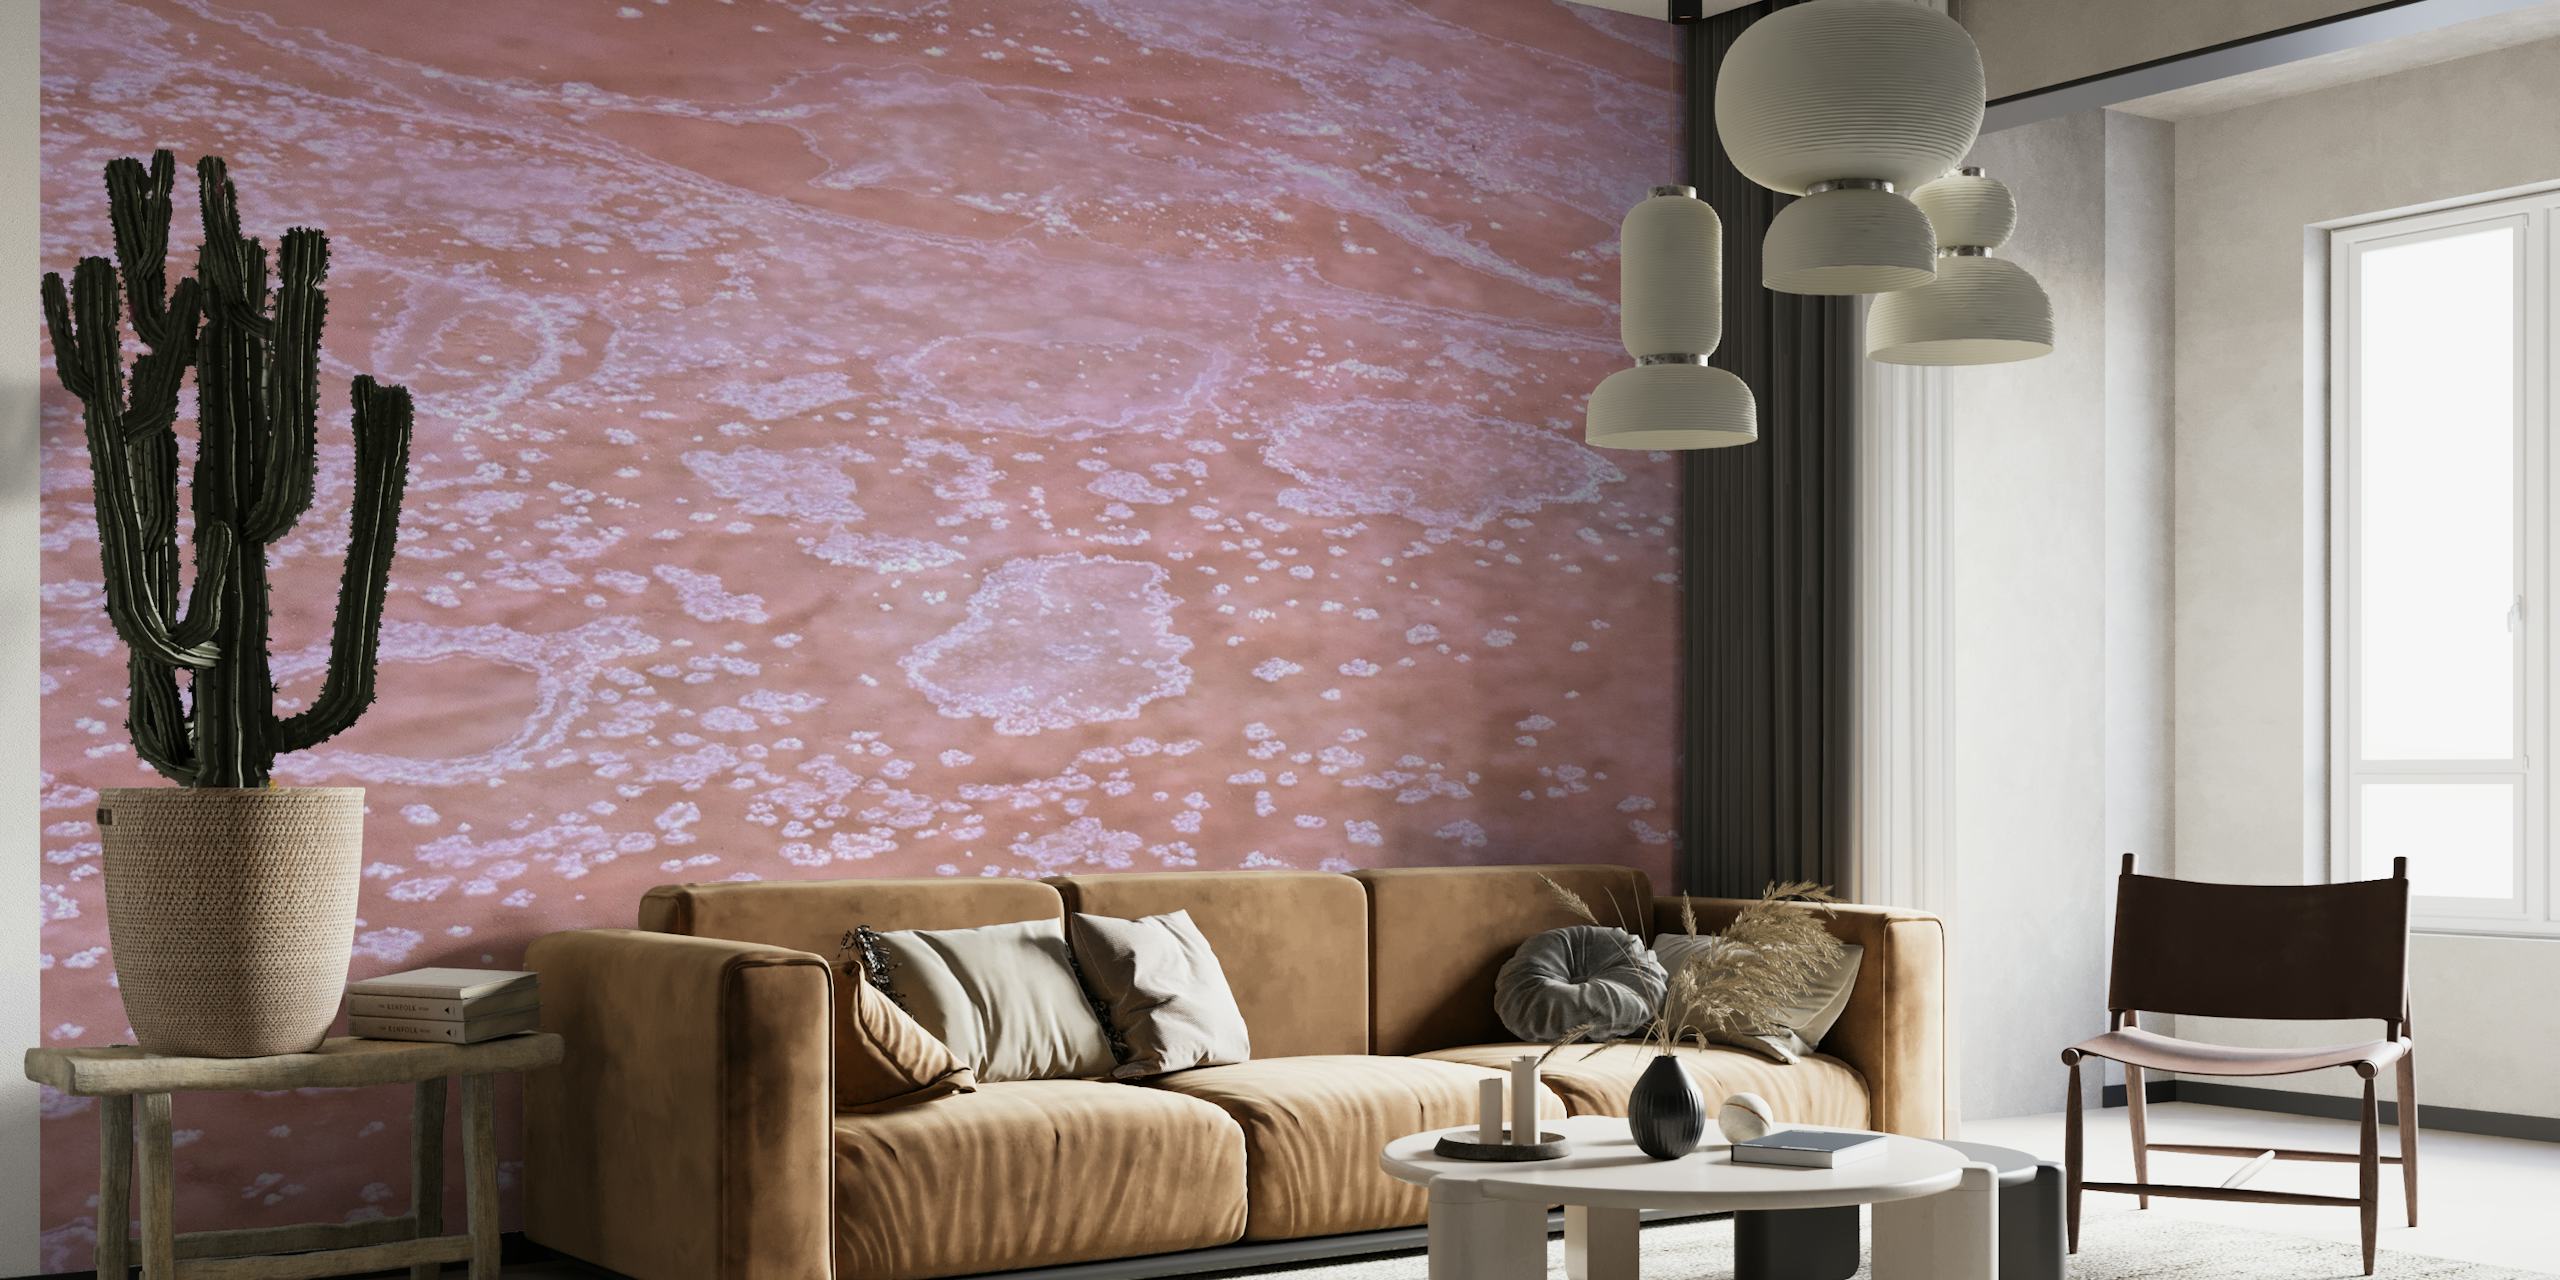 Zidna slika s uzorcima kristalizirane soli u toplim ružičastim tonovima